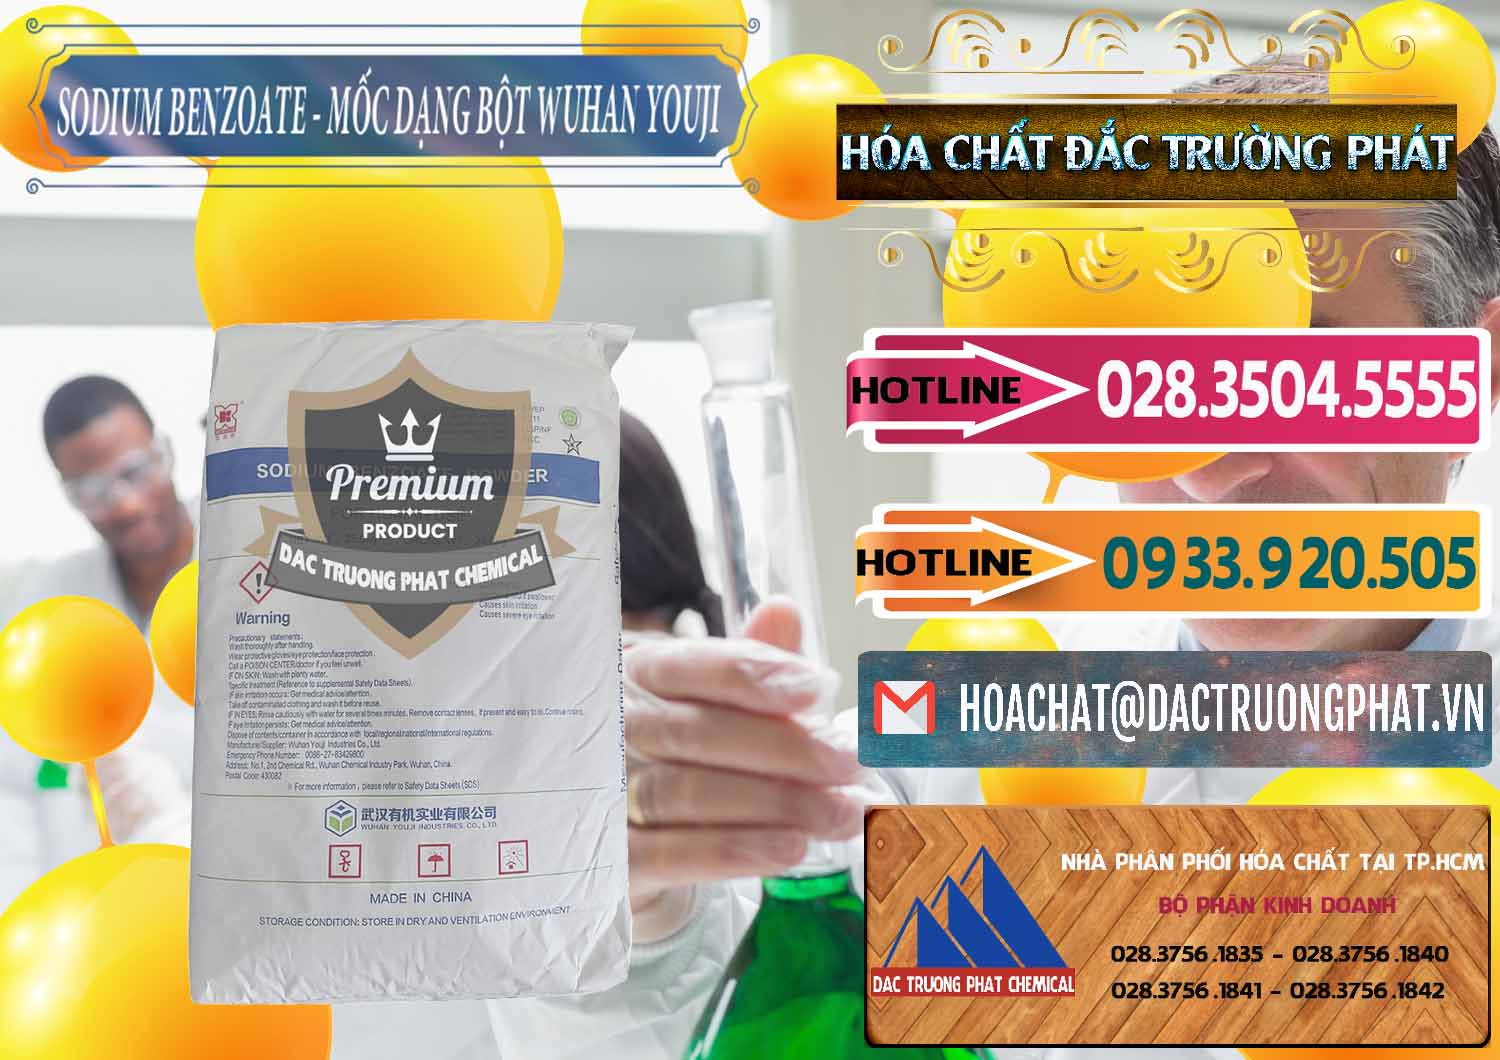 Chuyên phân phối & bán Sodium Benzoate - Mốc Dạng Bột Food Grade Wuhan Youji Trung Quốc China - 0275 - Cty chuyên kinh doanh và phân phối hóa chất tại TP.HCM - dactruongphat.vn